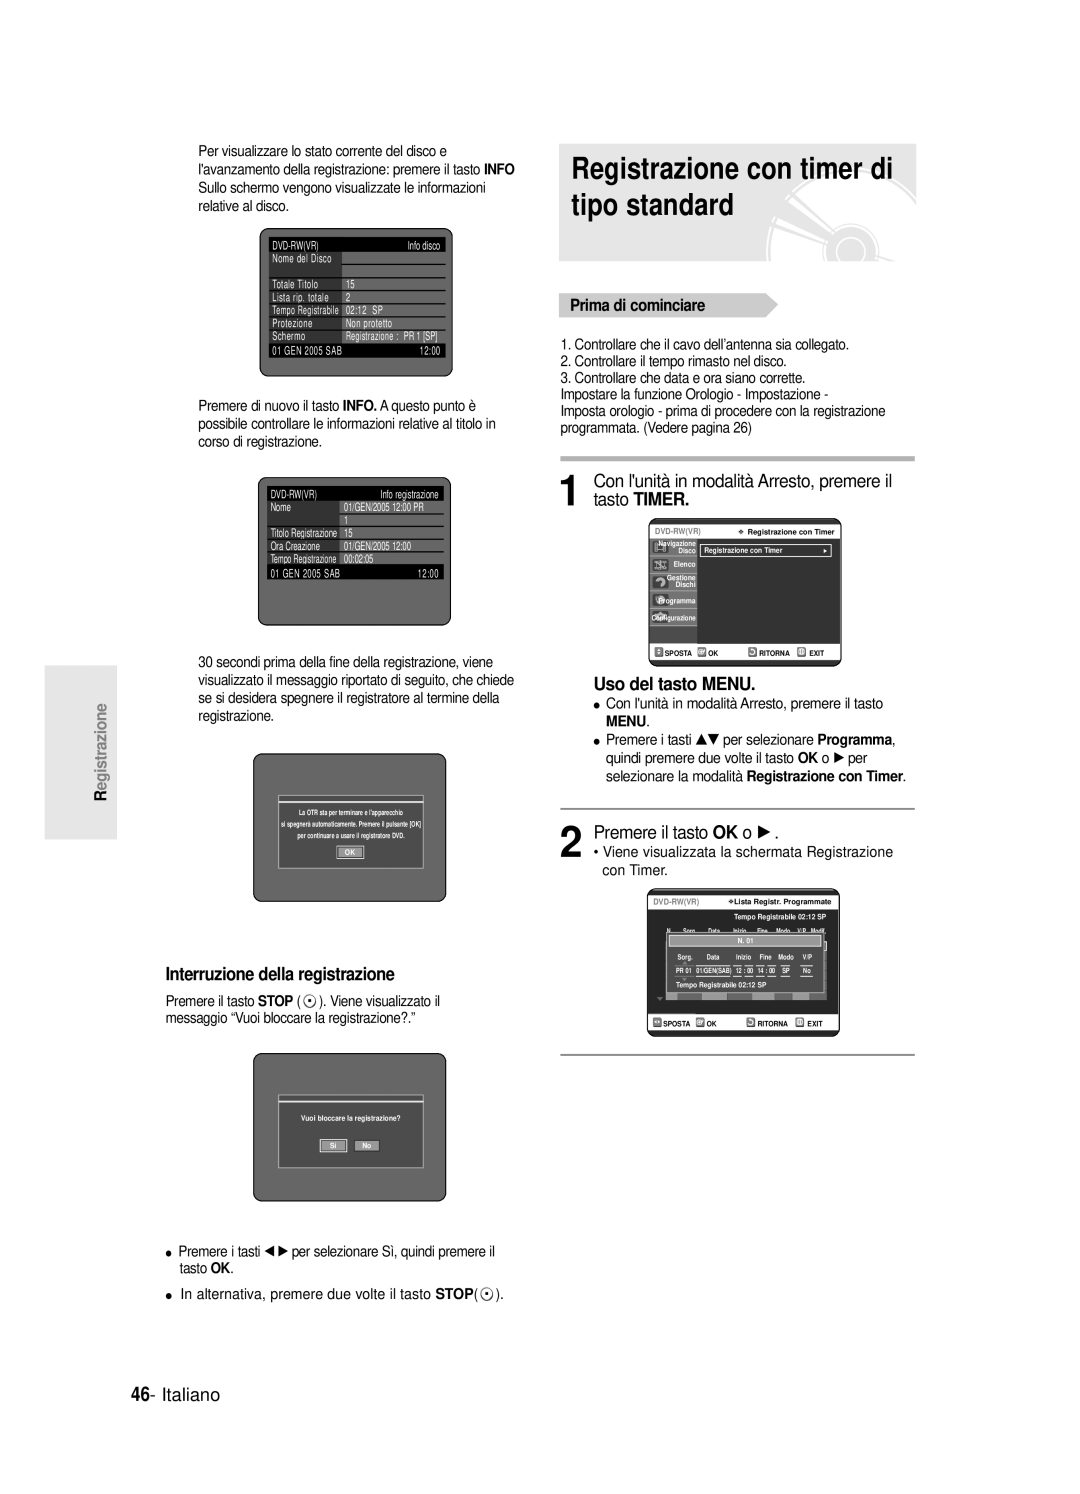 Samsung DVD-R120/XET manual Registrazione con timer di tipo standard, Uso del tasto MENU, Premere il tasto OK o √, Italiano 